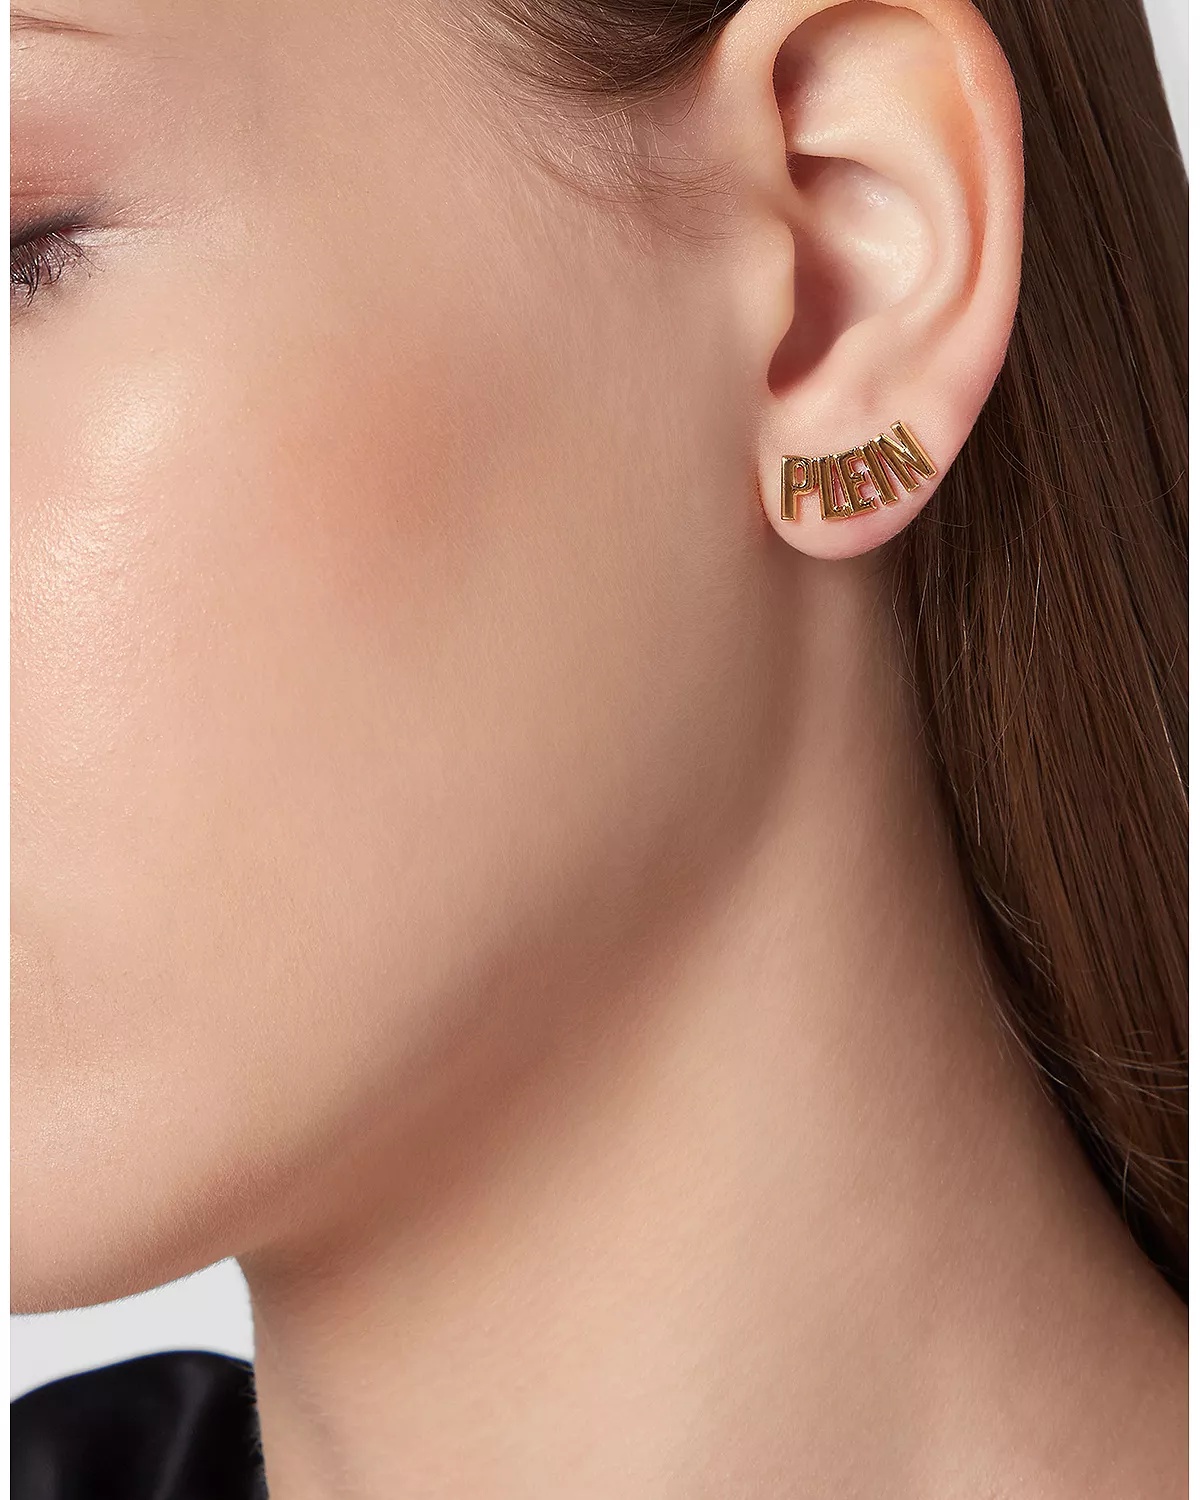 Lettering Gold Tone Stud Earrings, 0.3"W - 3